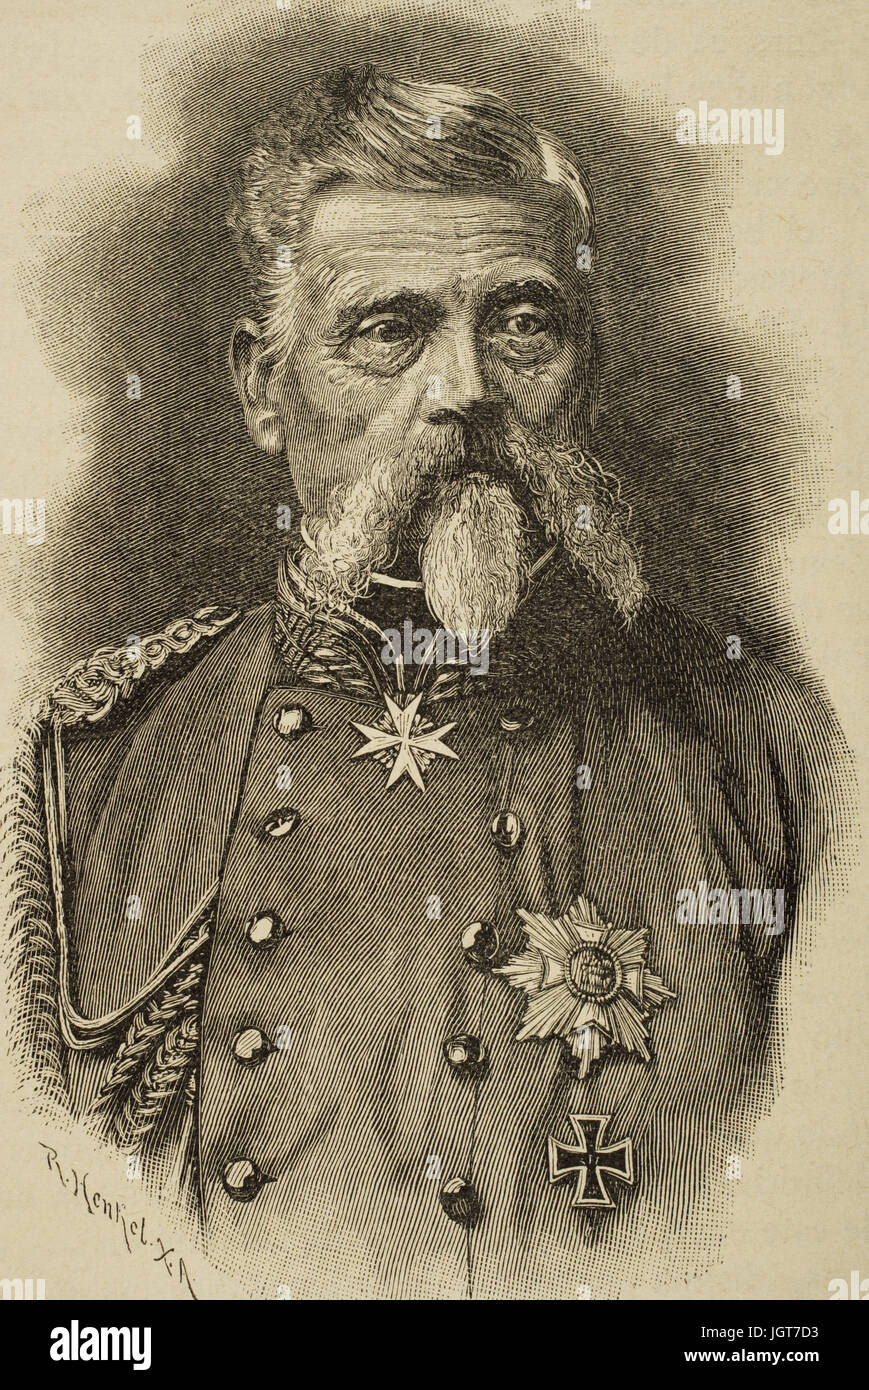 Ludwig Freiherr von und zu der Tann-Rathsamhausen (1815-1881). Generale Tedesco. Incisione di R. Henkel nella storia universale, 1885. Foto Stock